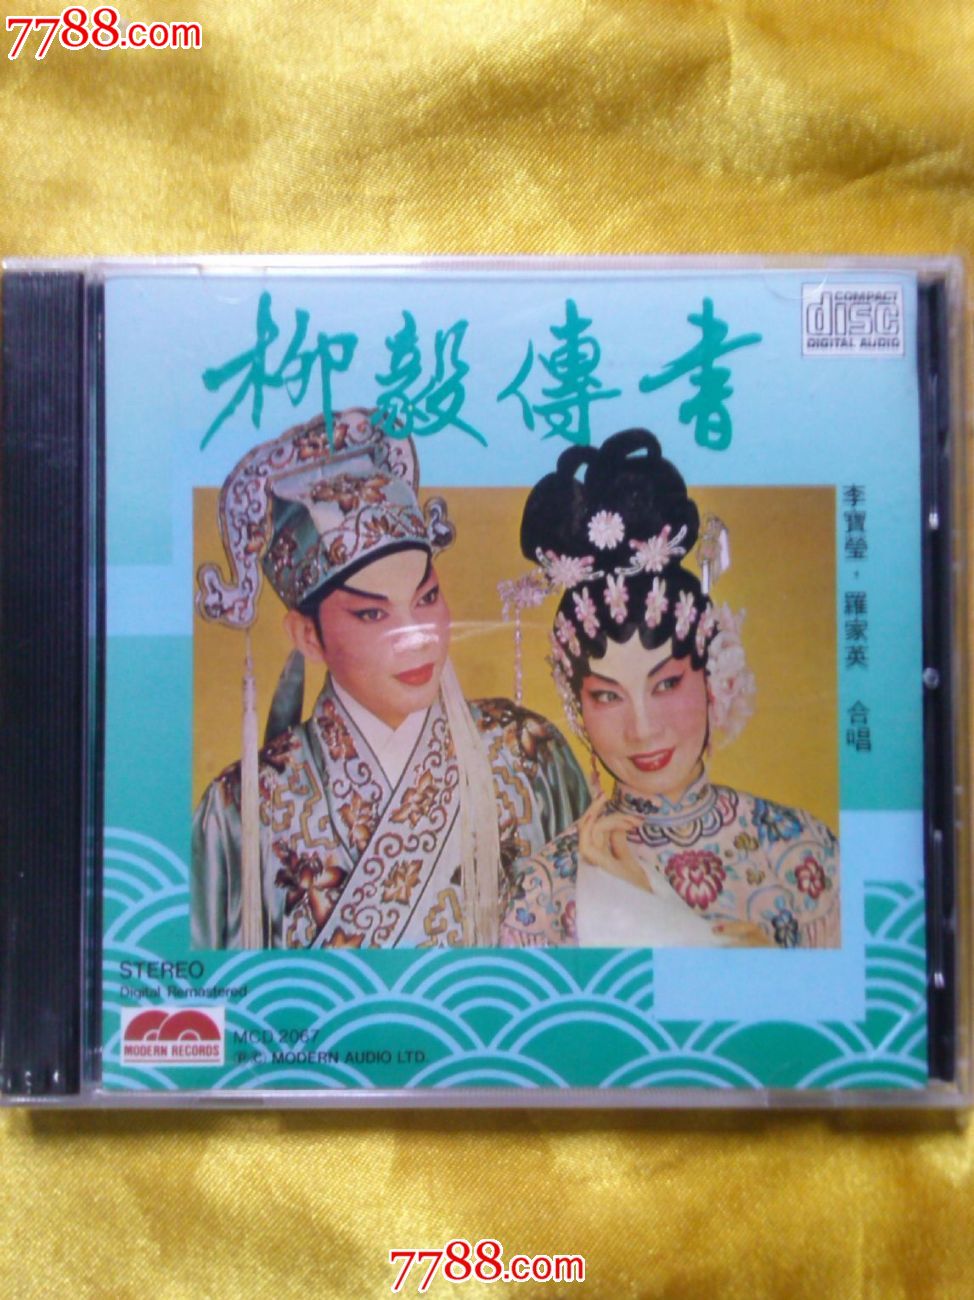 粤曲柳毅传书罗家英李宝莹合唱香港sony版cd